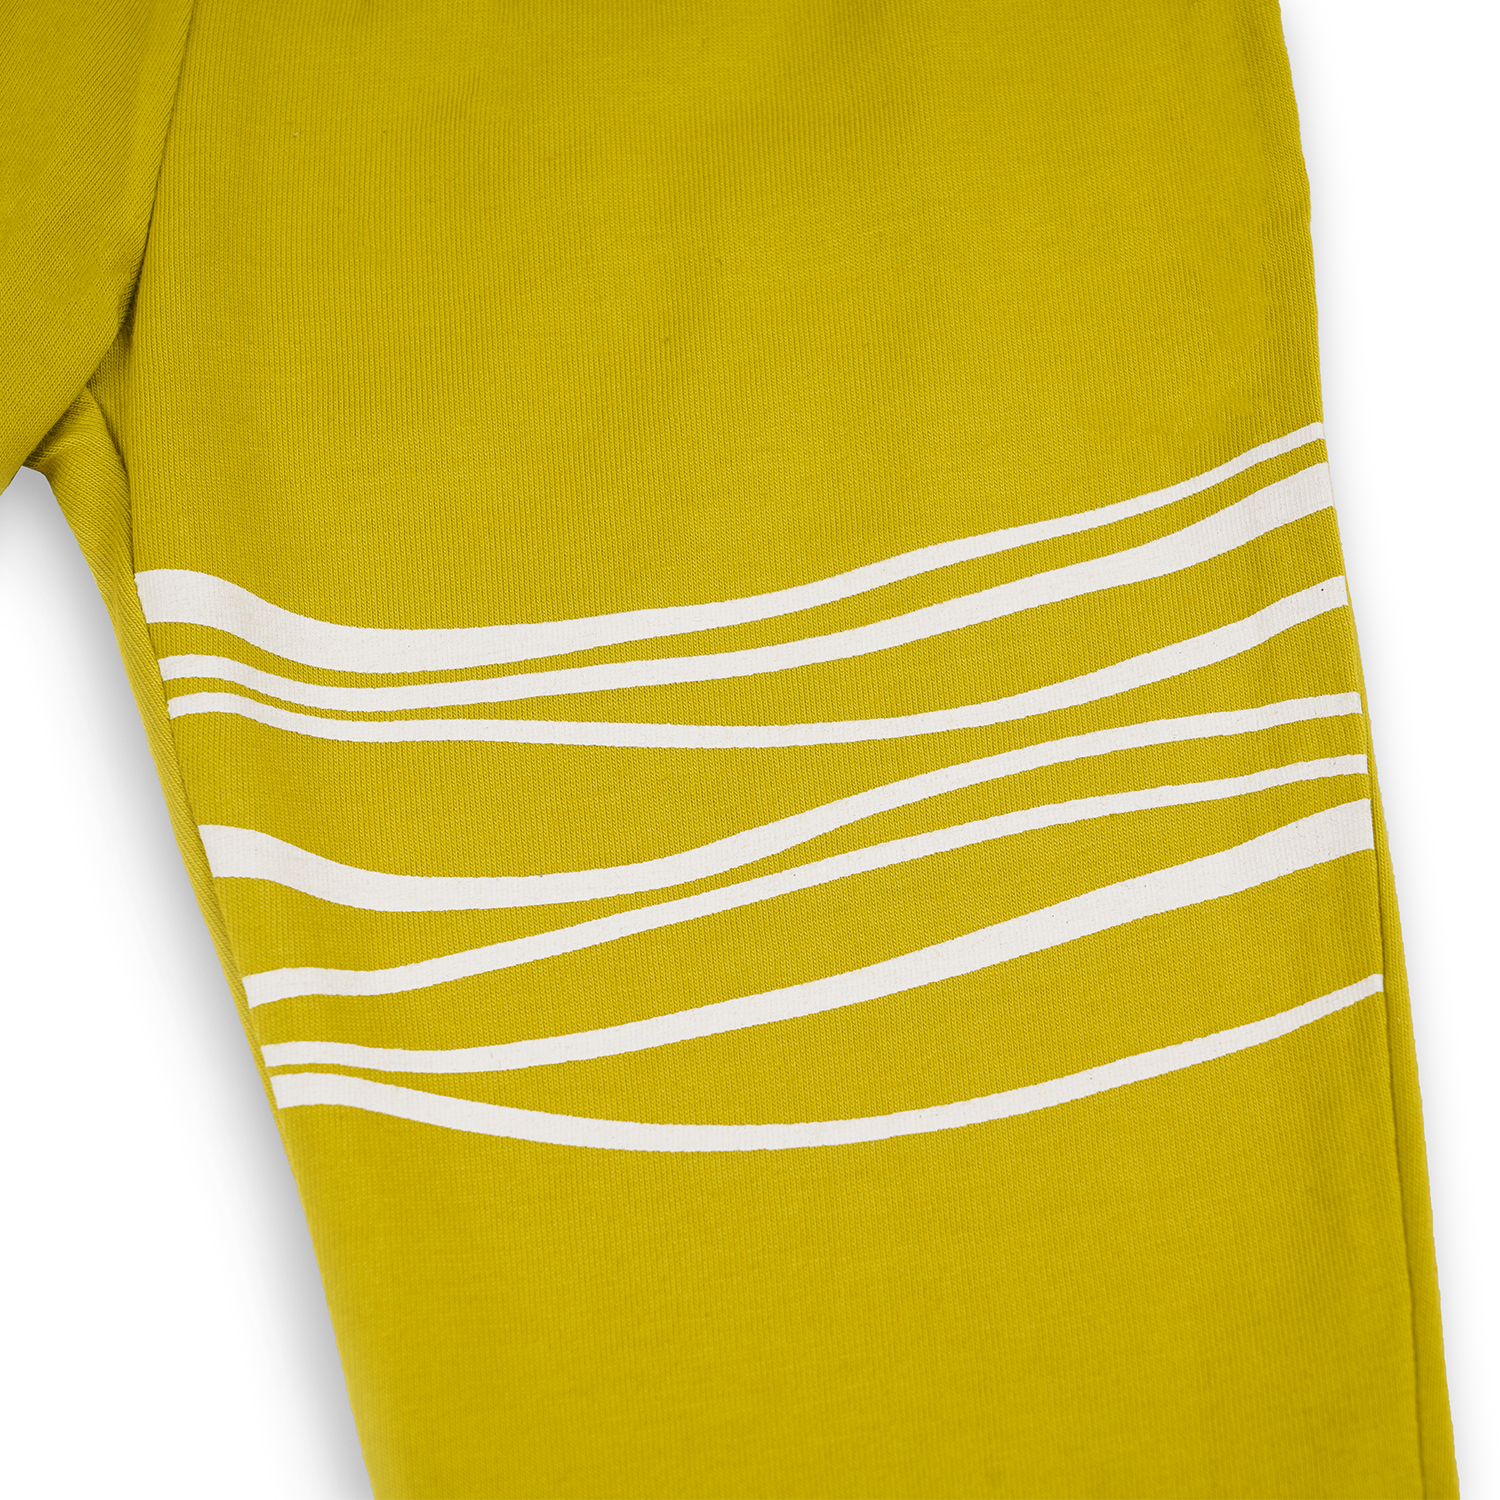 Reef Printed T-shirt with Matching Ripple Leggings Set, Mustard